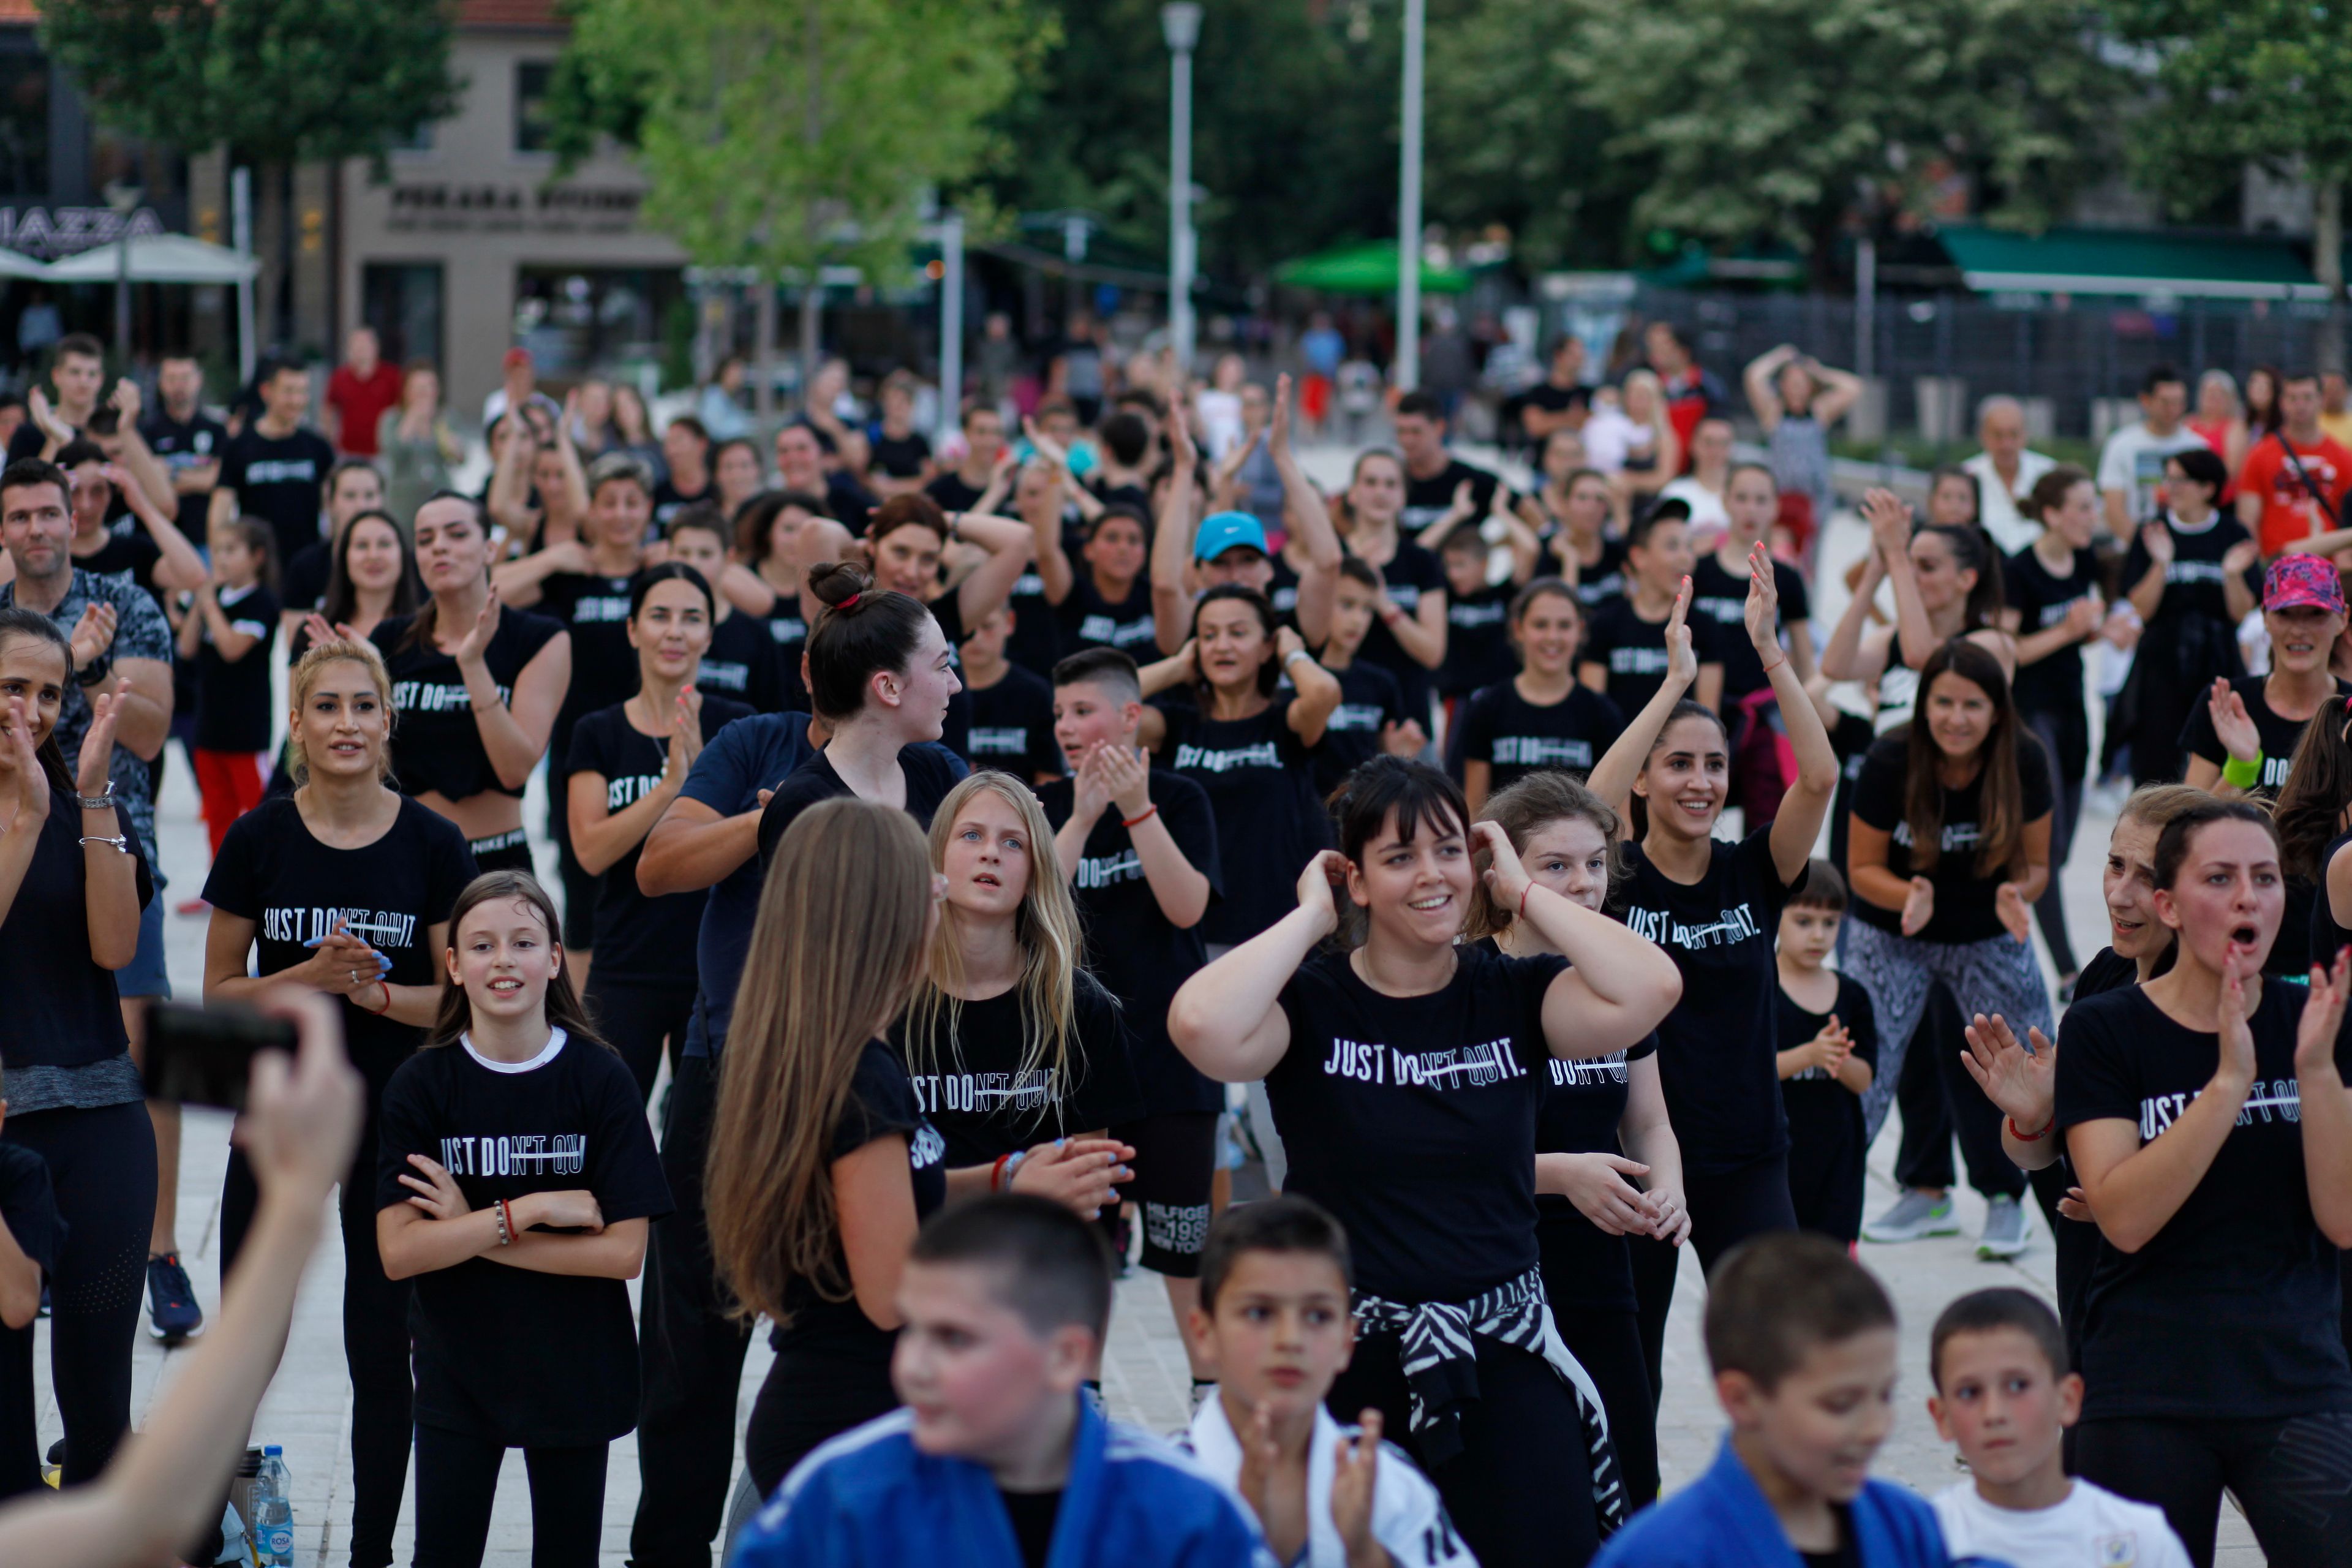 Grupa mladih ljudi koji su se okupili na nikšićkom trgu, nose crne majice na kojima piše "Just do it" 